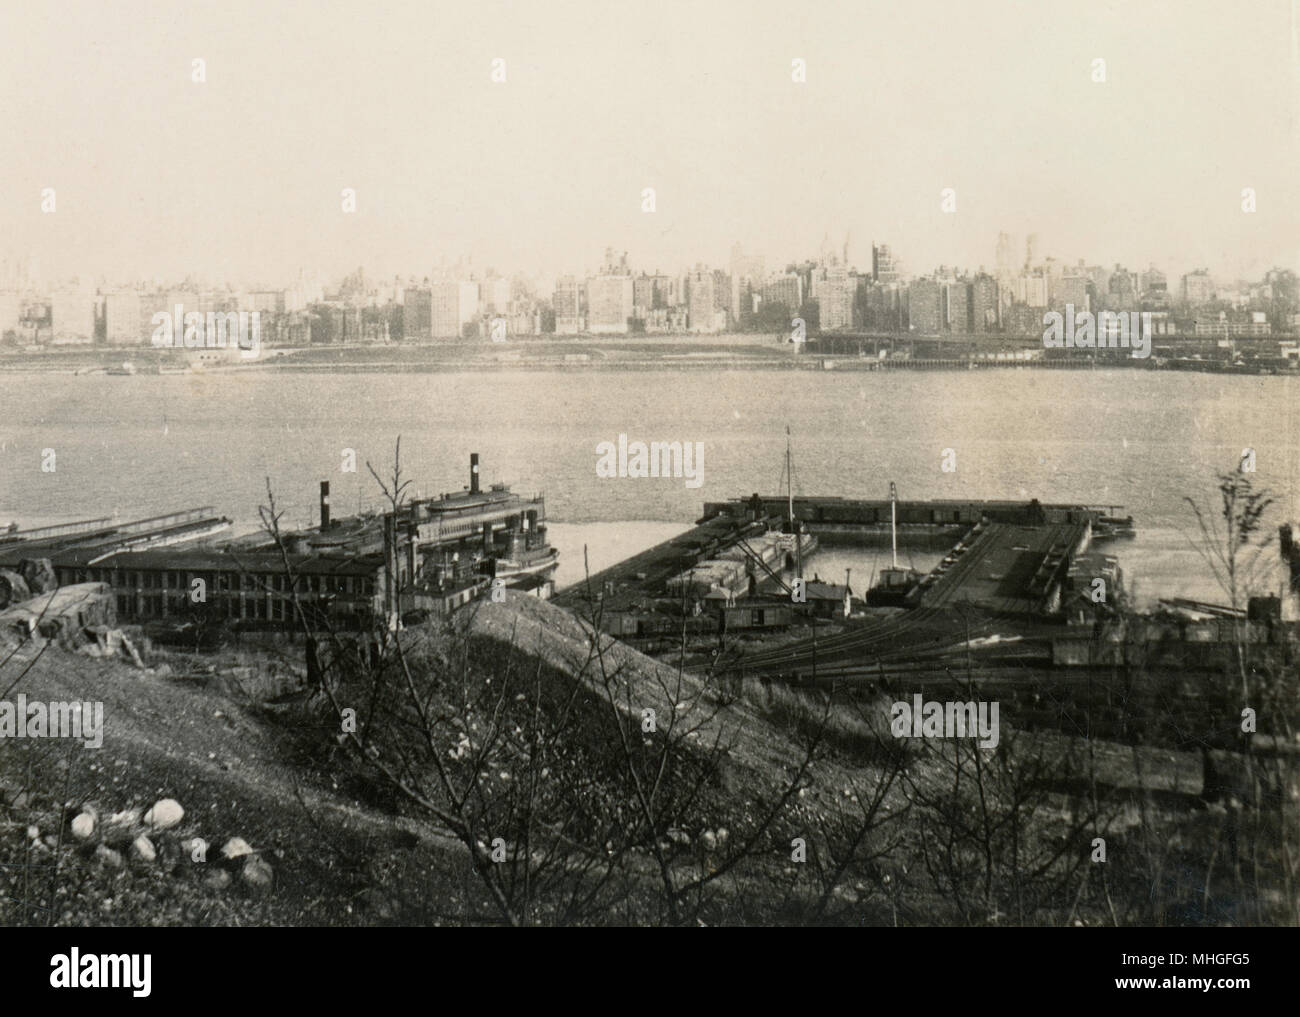 Antike Februar 1939 Foto, Blick auf die Weehawken Güterbahnhöfe und New York City Skyline, vom Boulevard East in West New York, NJ. Quelle: ORIGINAL FOTOABZUG. Stockfoto